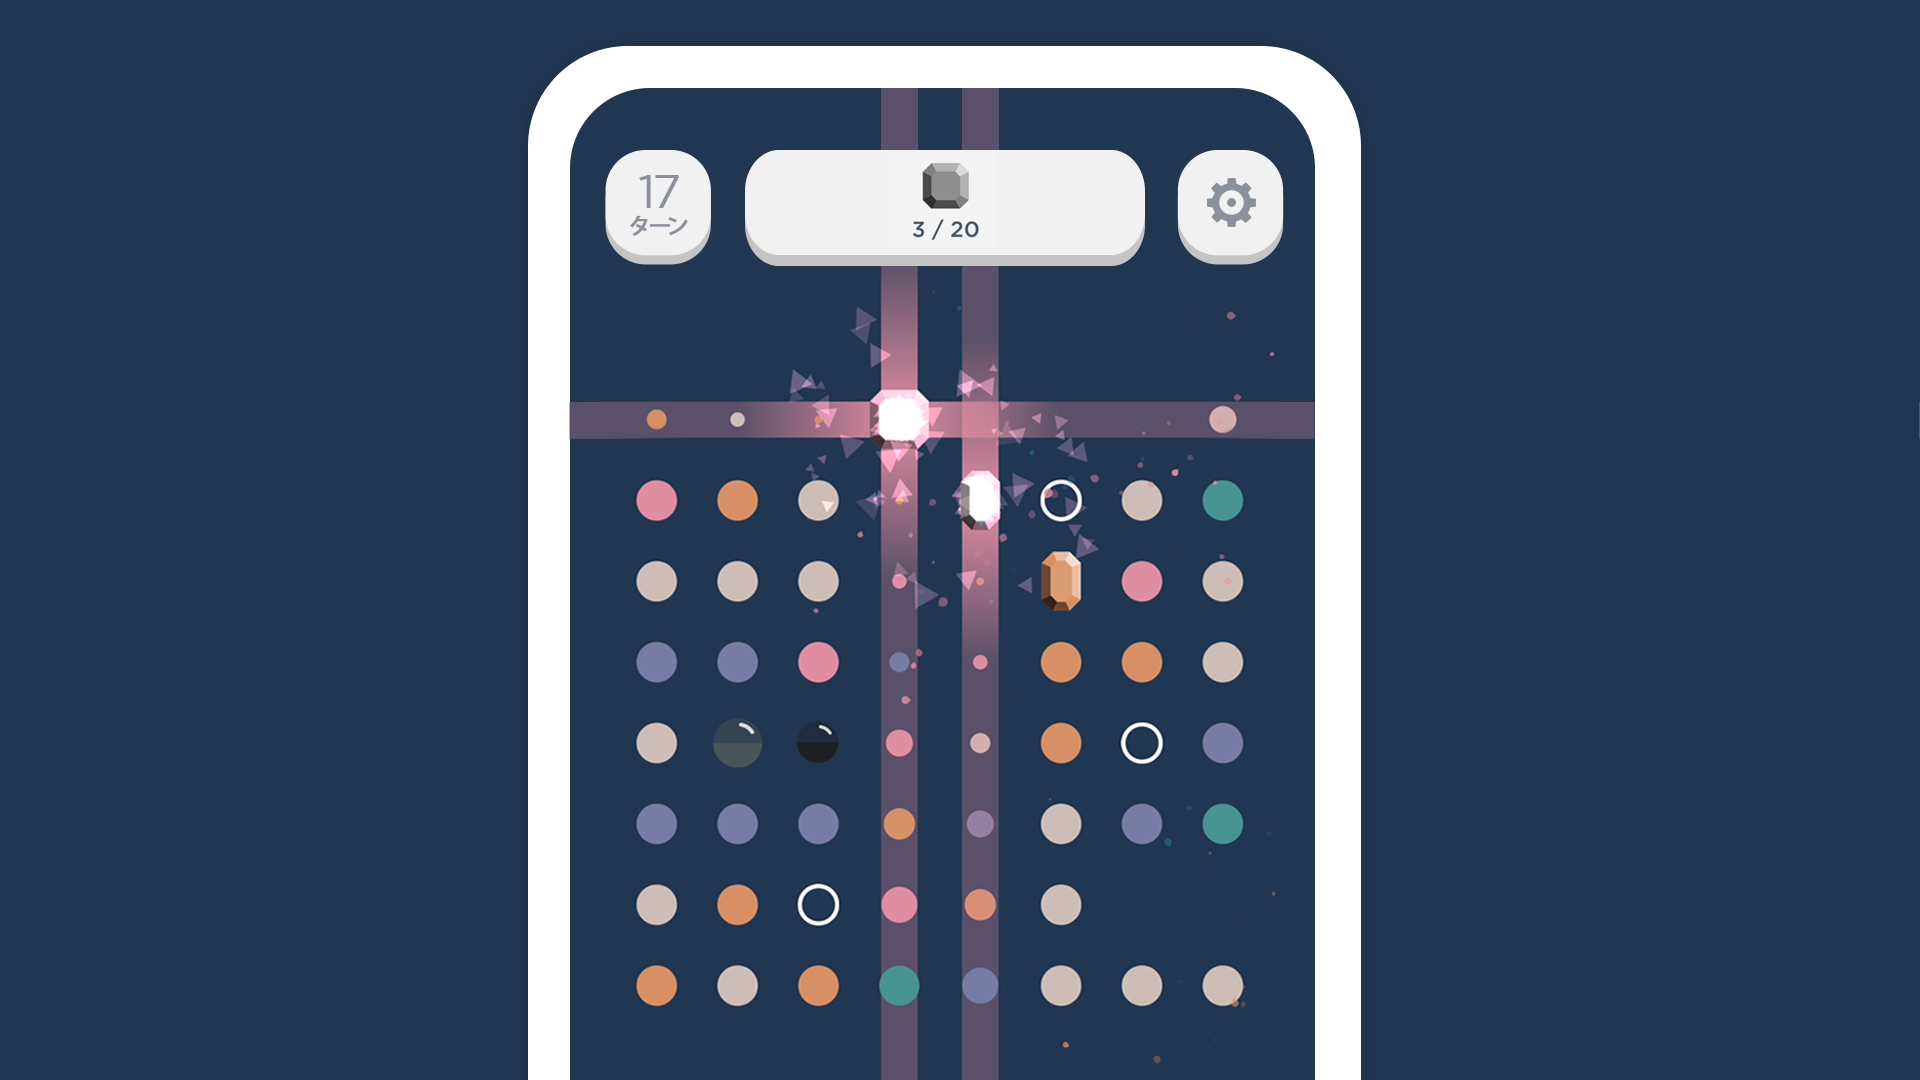 Two Dots:リラックスできる美しい頭脳パズルゲームのキャプチャ